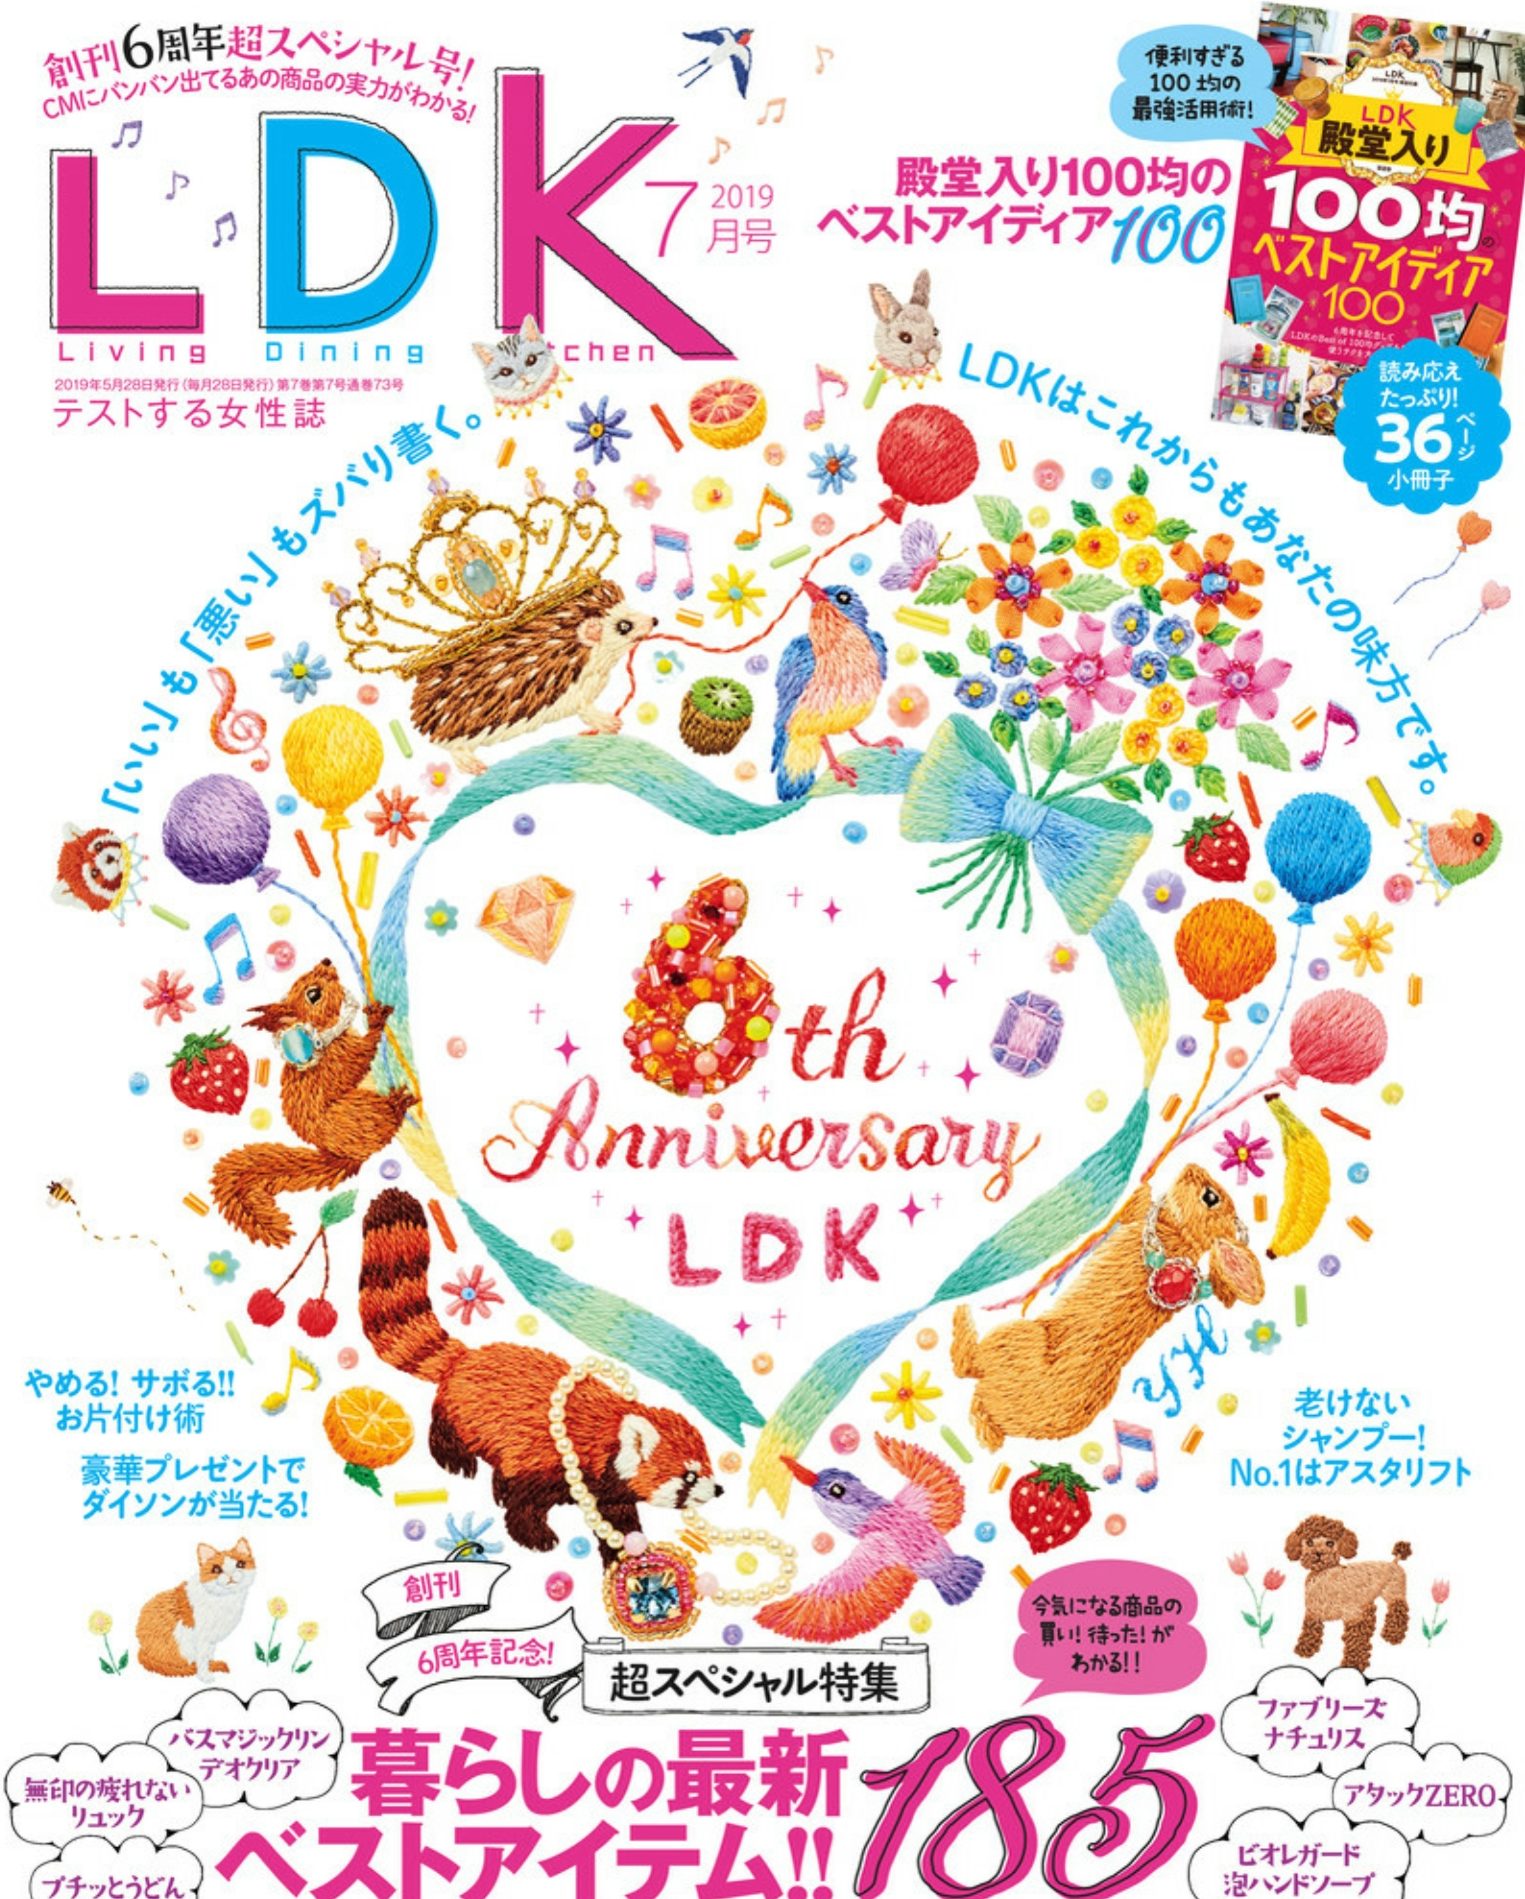 『LDK』2019.7月号表紙